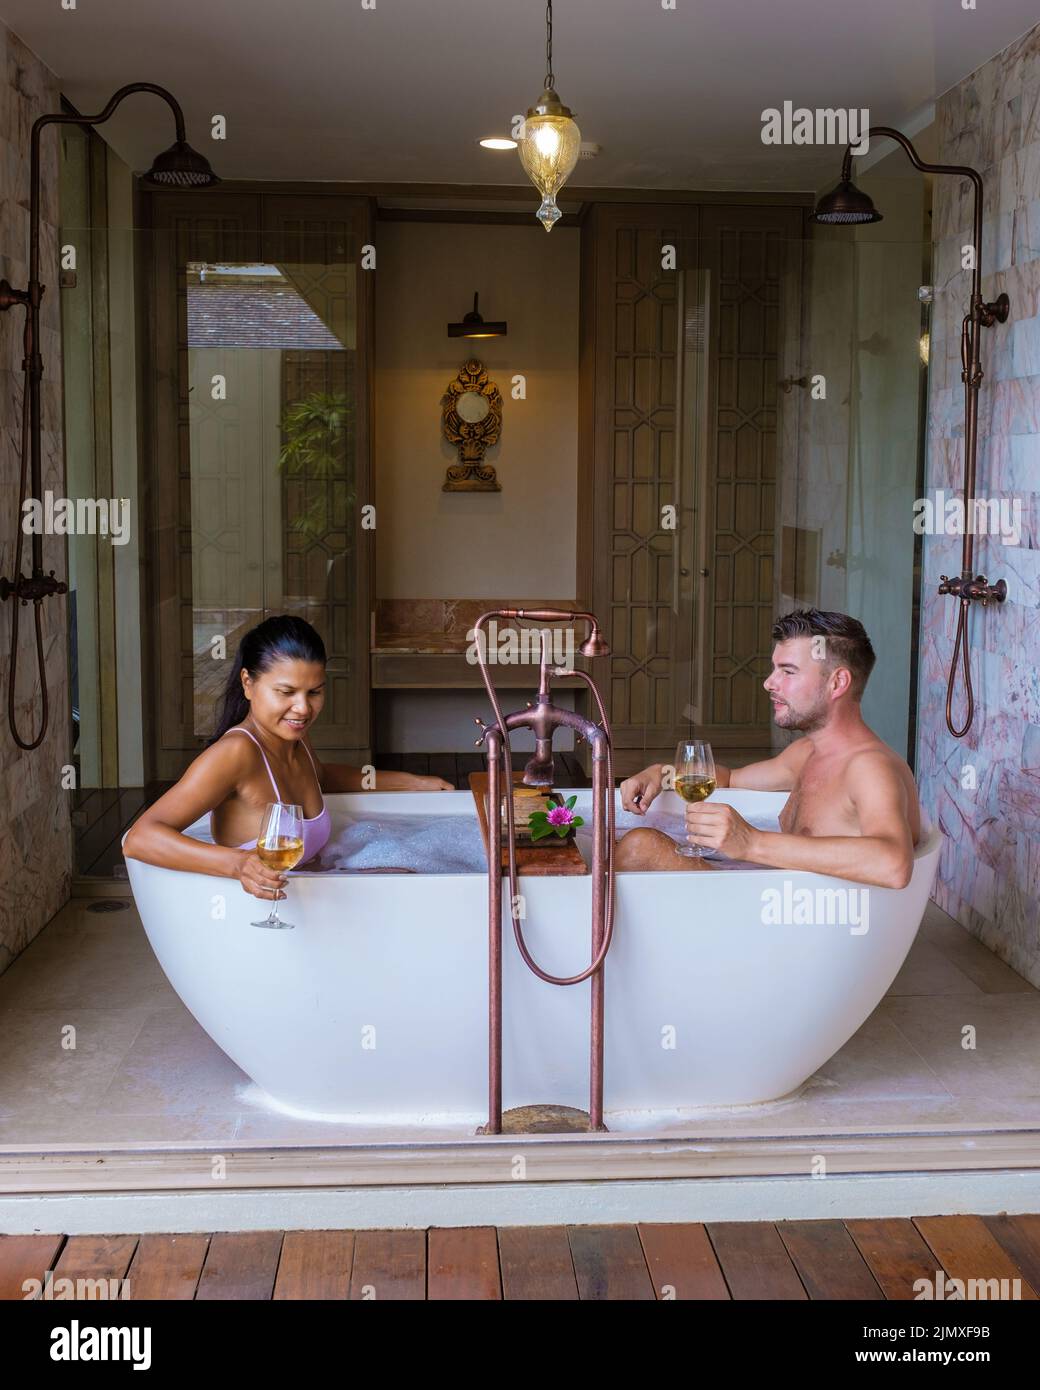 Romantica vasca da bagno con petali di rosa, vacanza di lusso nella vasca idromassaggio, coppia uomini e donne in bagno Foto Stock